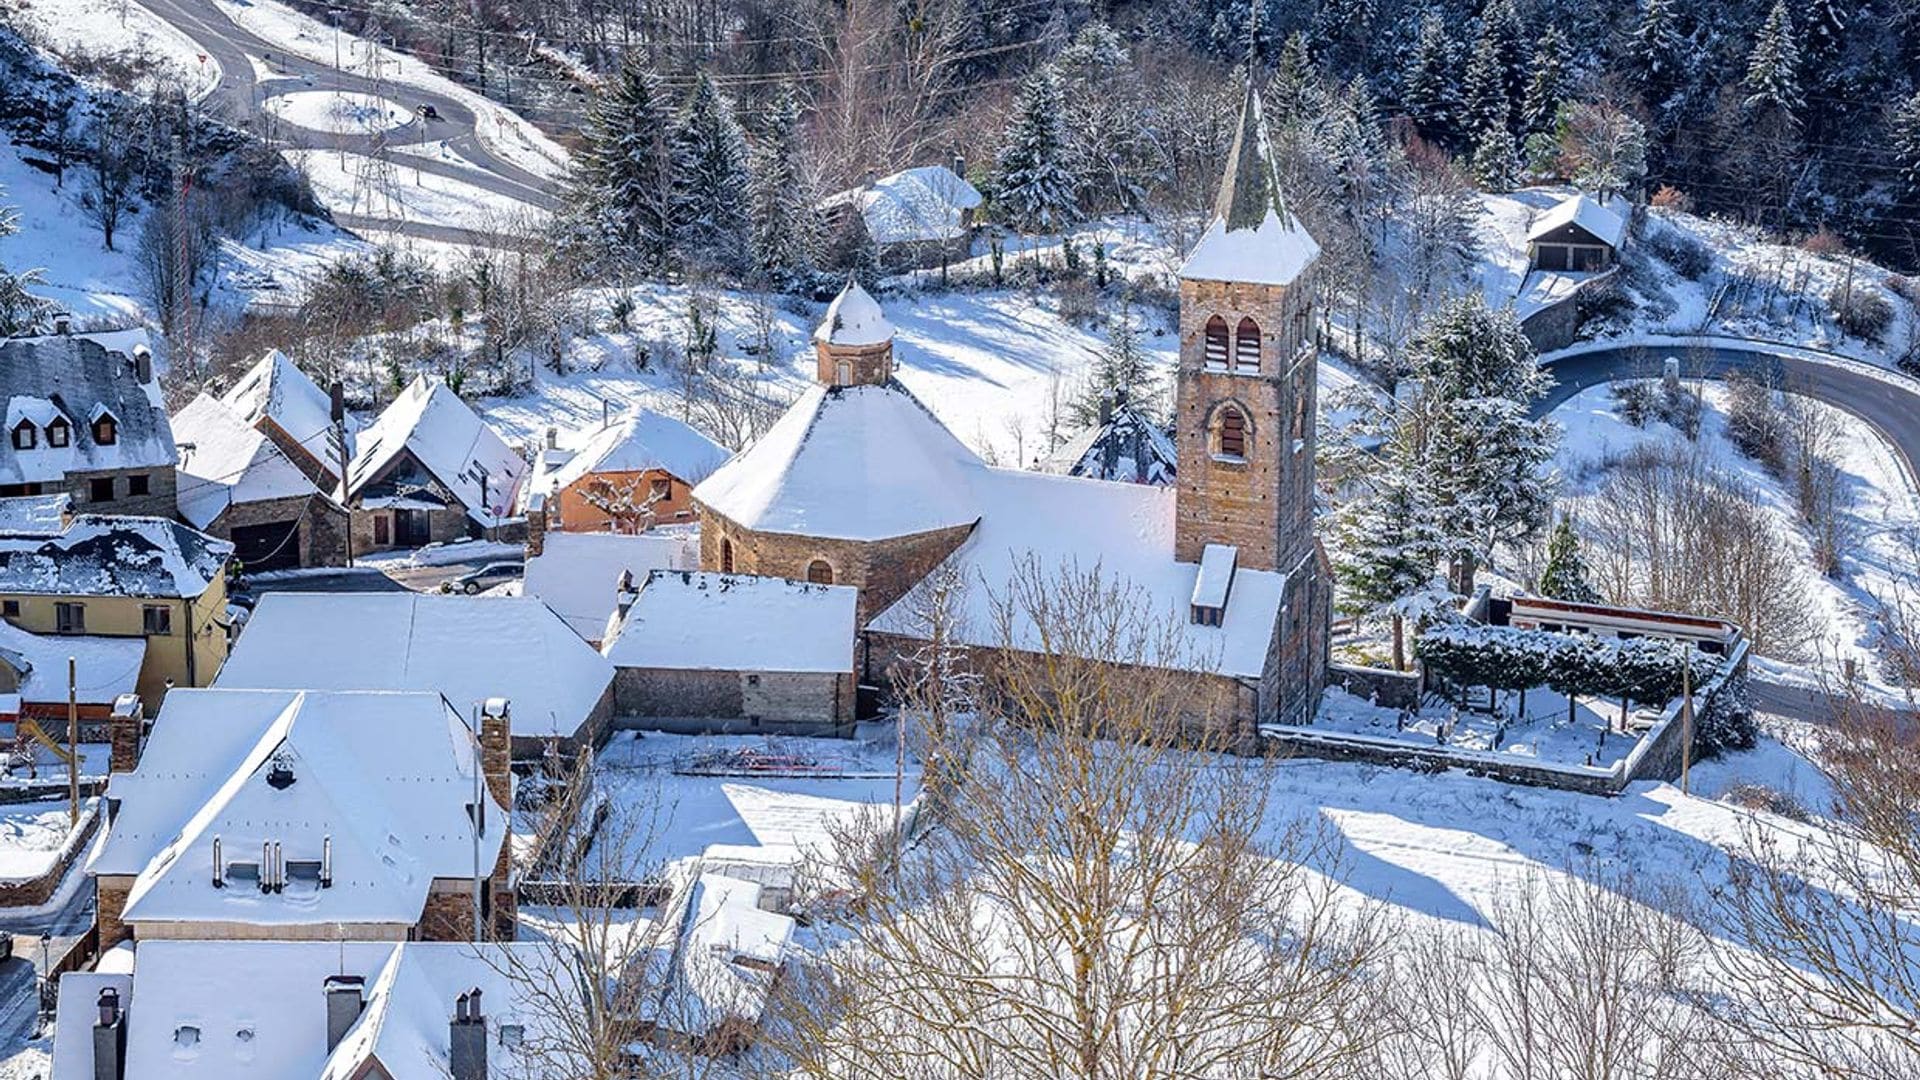 7 pueblos cerca de estaciones de esquí que puedes visitar tras la jornada de nieve